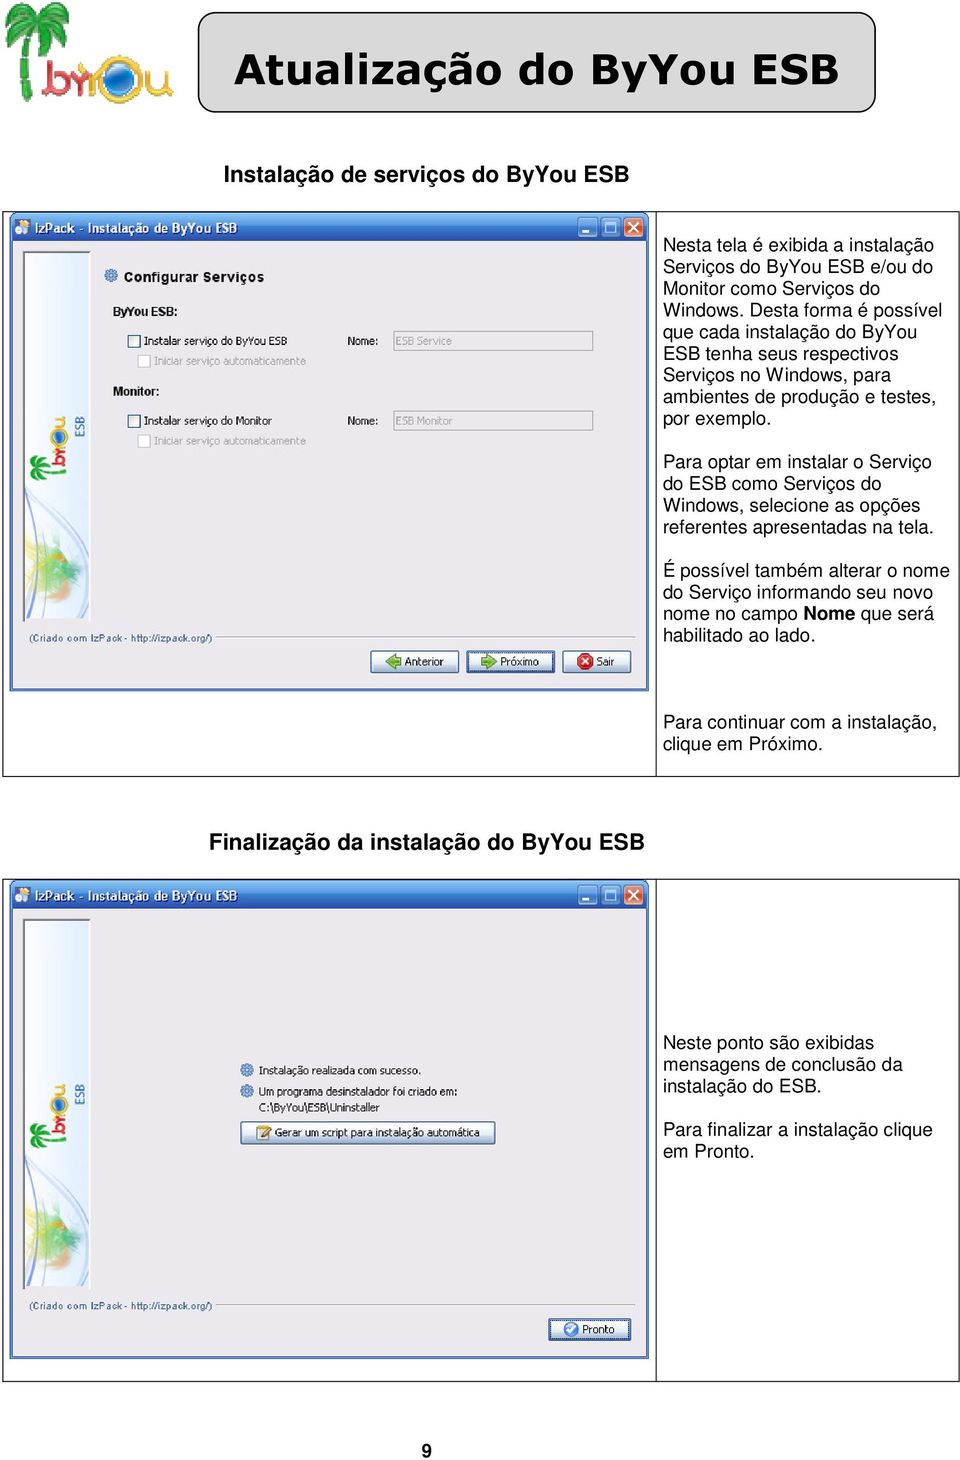 Para optar em instalar o Serviço do ESB como Serviços do Windows, selecione as opções referentes apresentadas na tela.